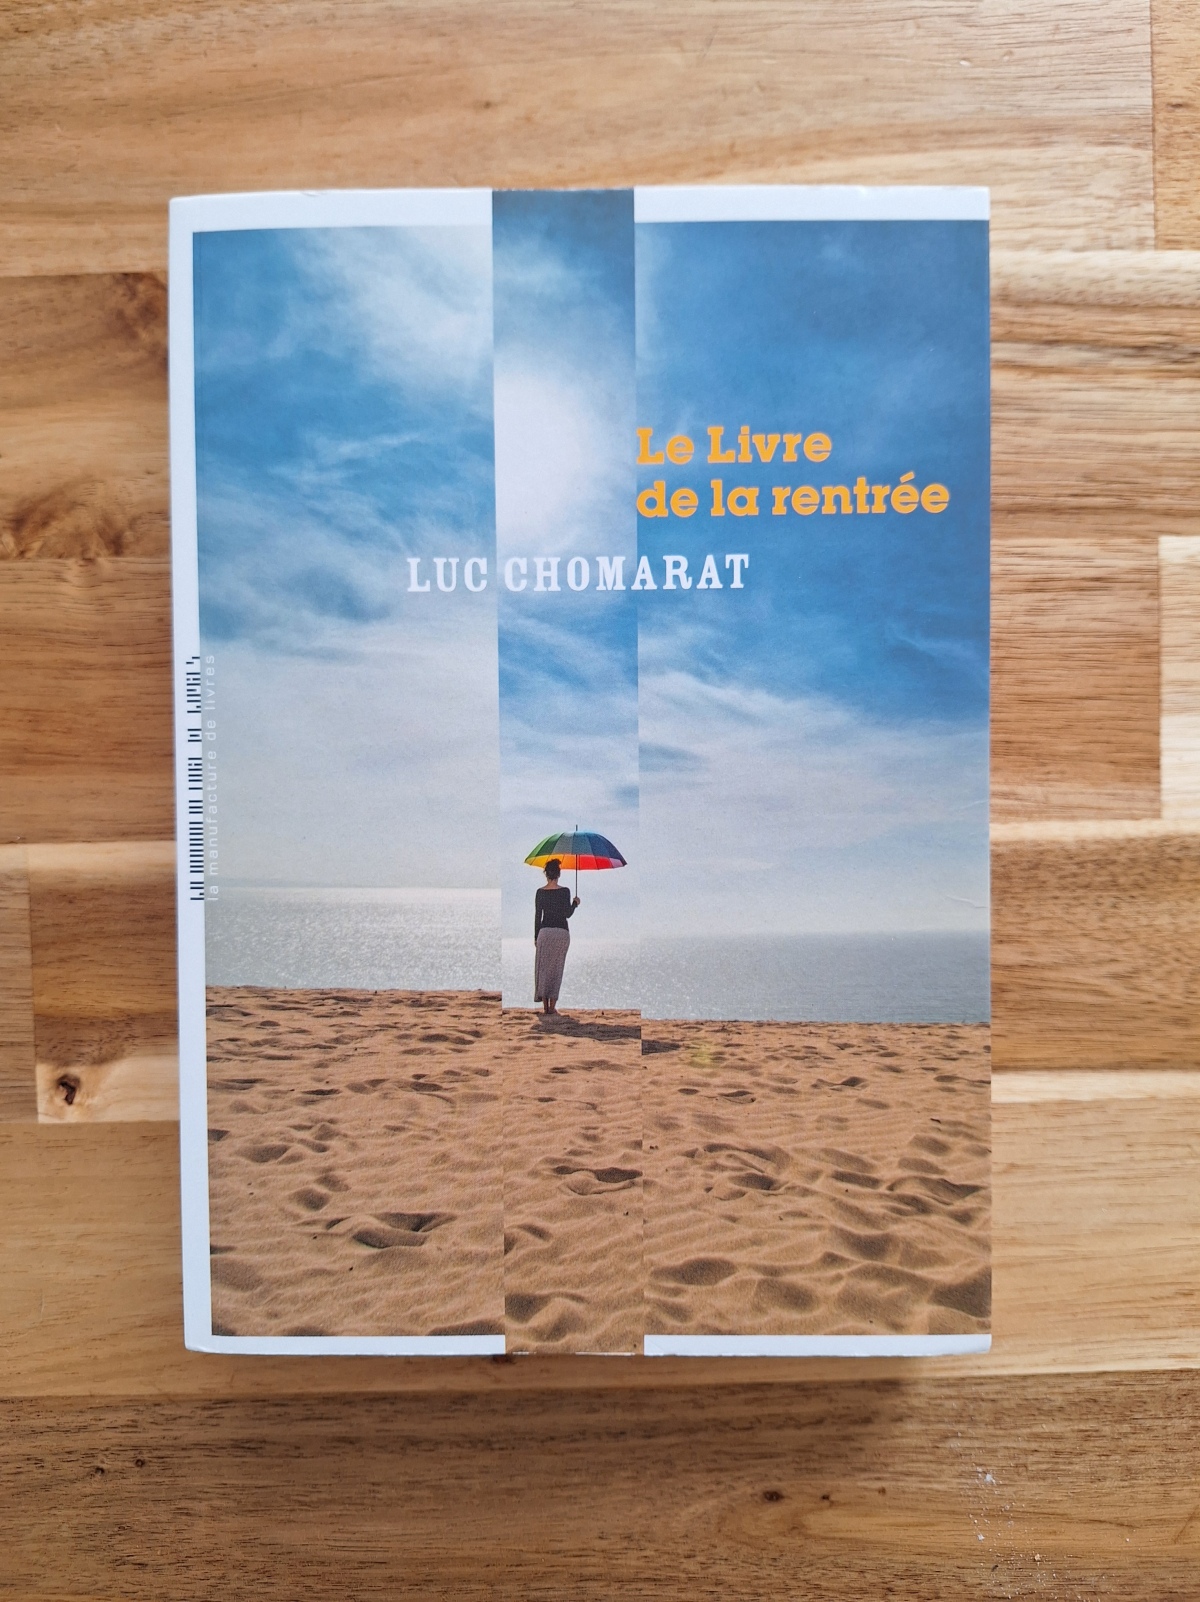 Le livre de la rentrée / Luc Chomarat